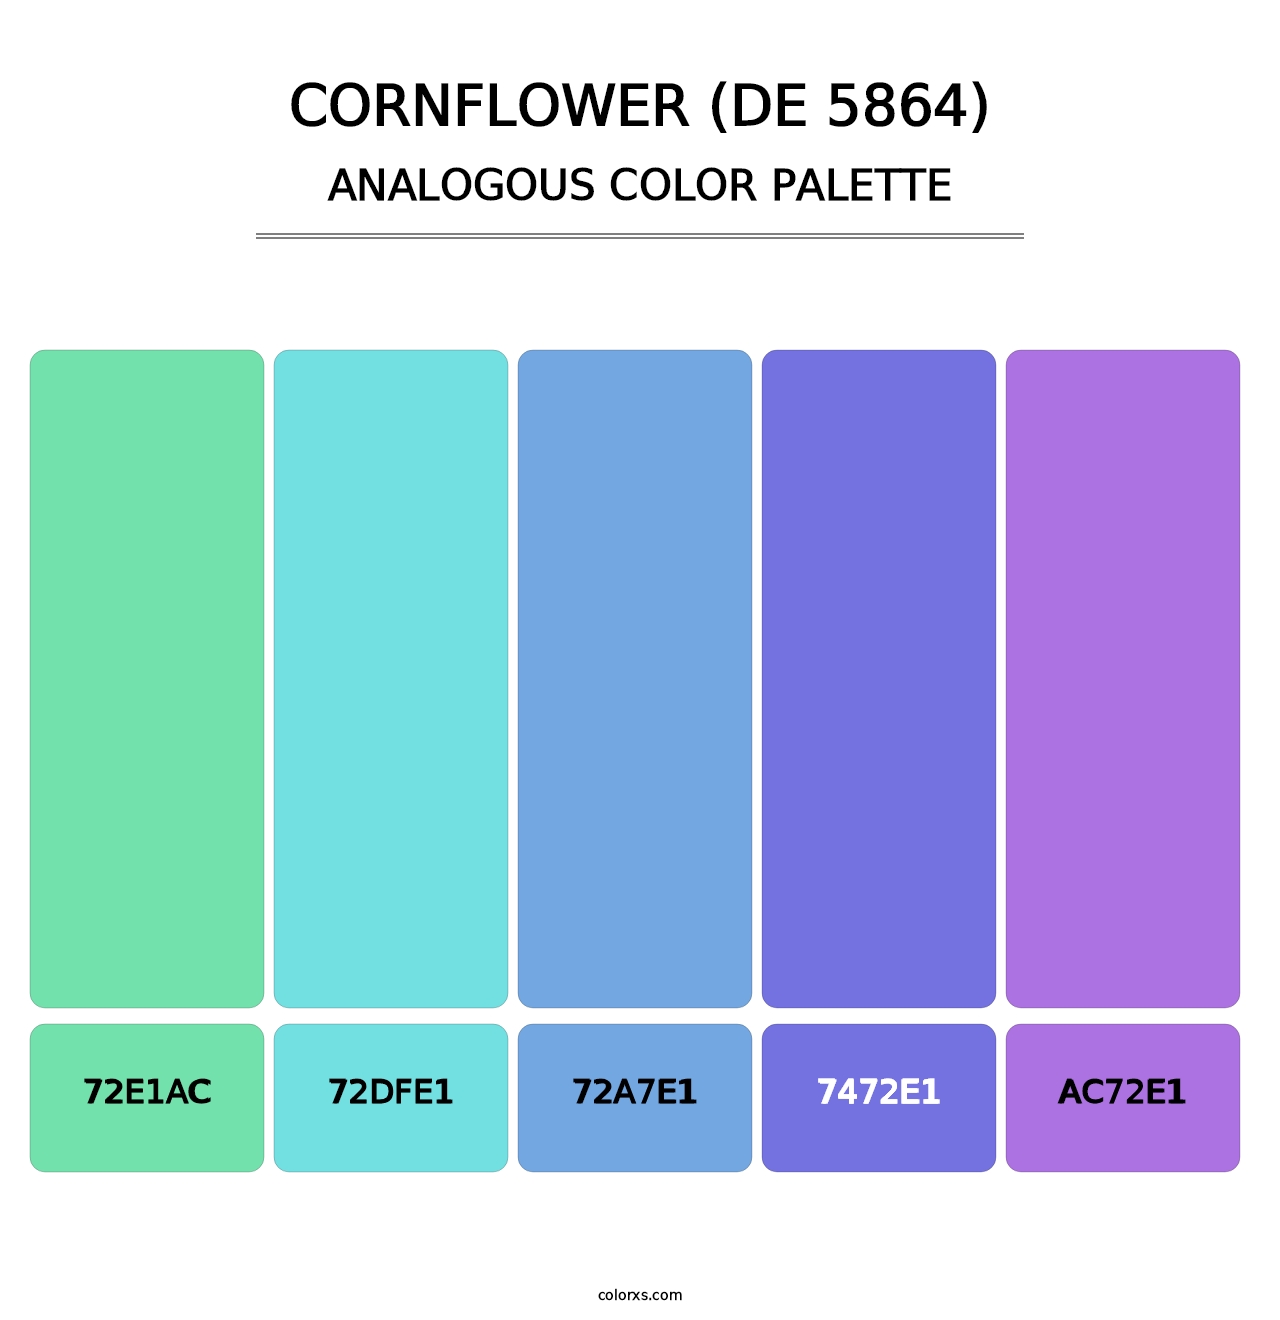 Cornflower (DE 5864) - Analogous Color Palette